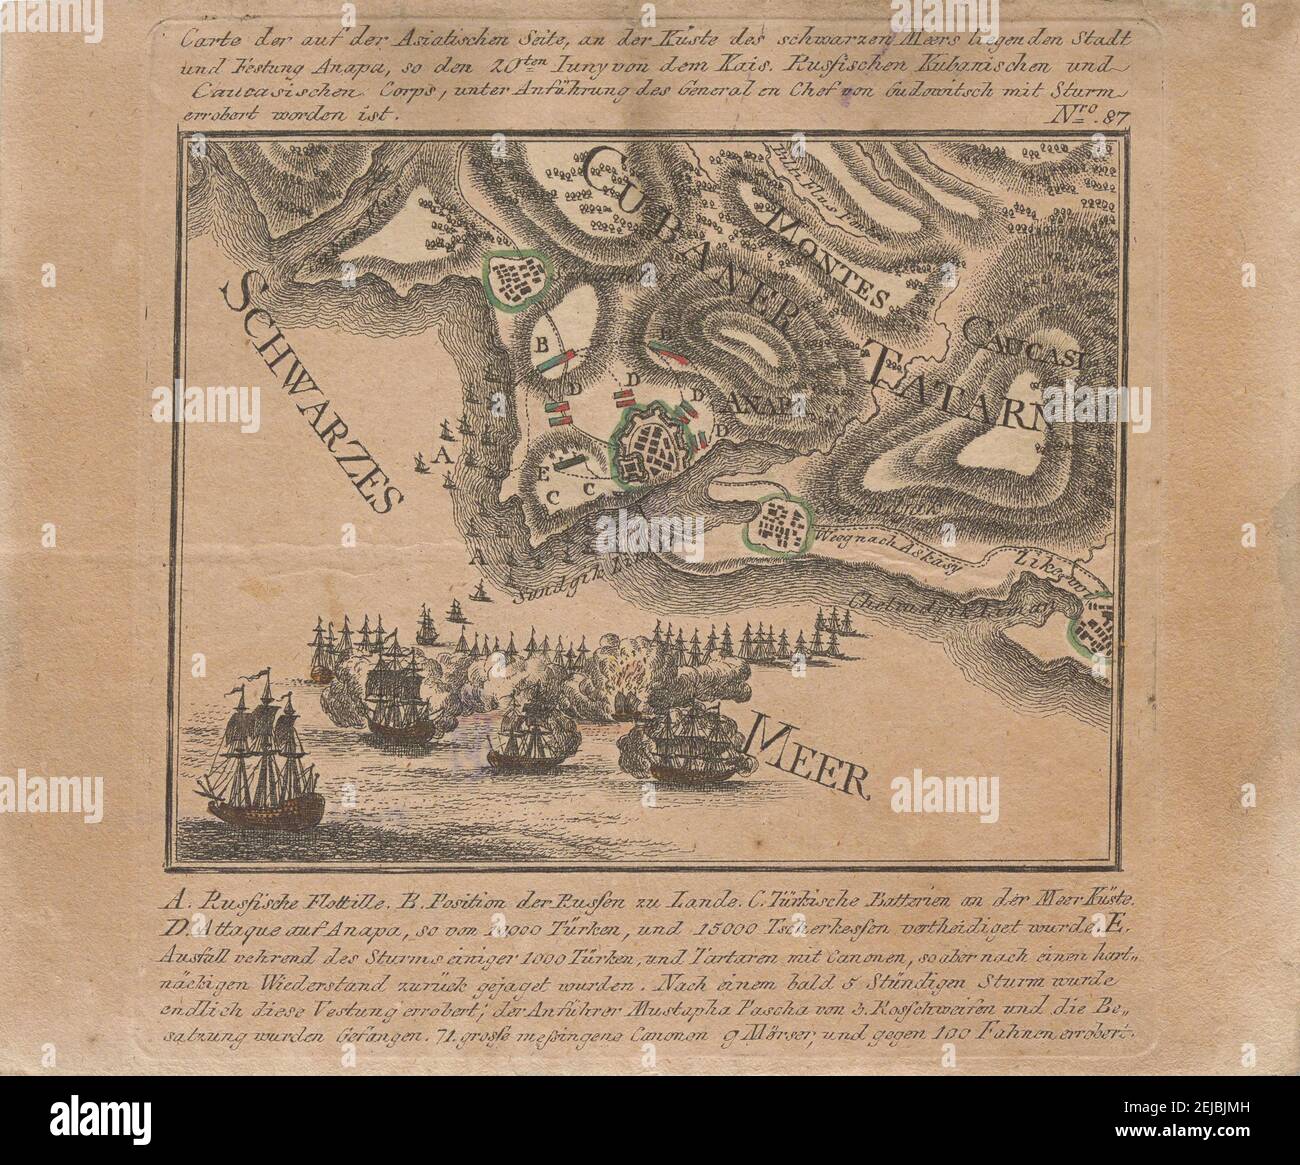 Karte der Eroberung der Seefestung Anapa durch russische Truppen am Schwarzen Meer im Juni 1791. Museum: PRIVATE SAMMLUNG. Autor: ANONYM. Stockfoto